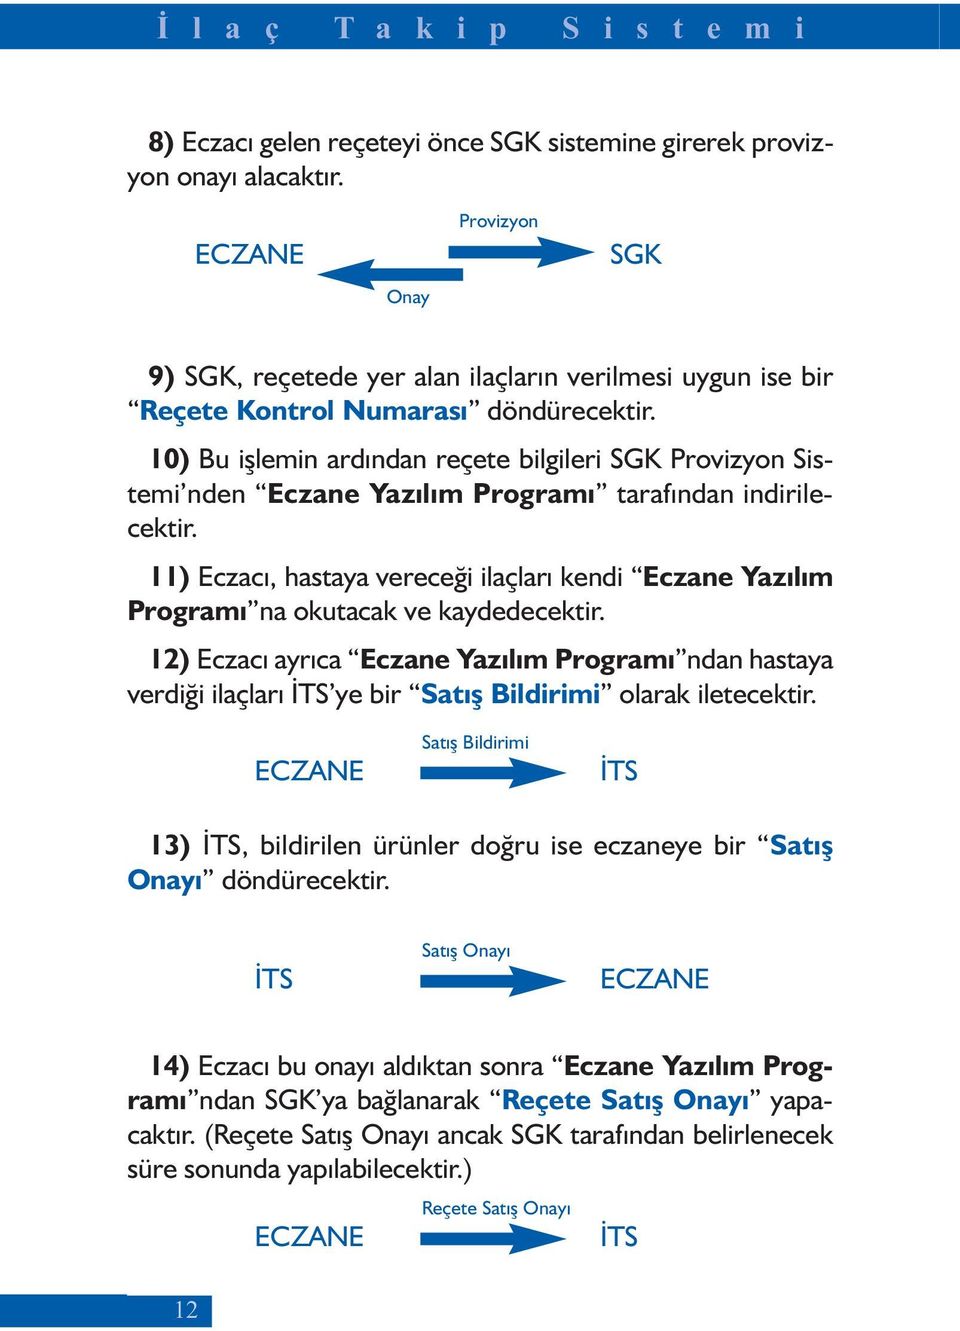 10) Bu işlemin ardından reçete bilgileri SGK Provizyon Sistemi nden Eczane Yazılım Programı tarafından indirilecektir.